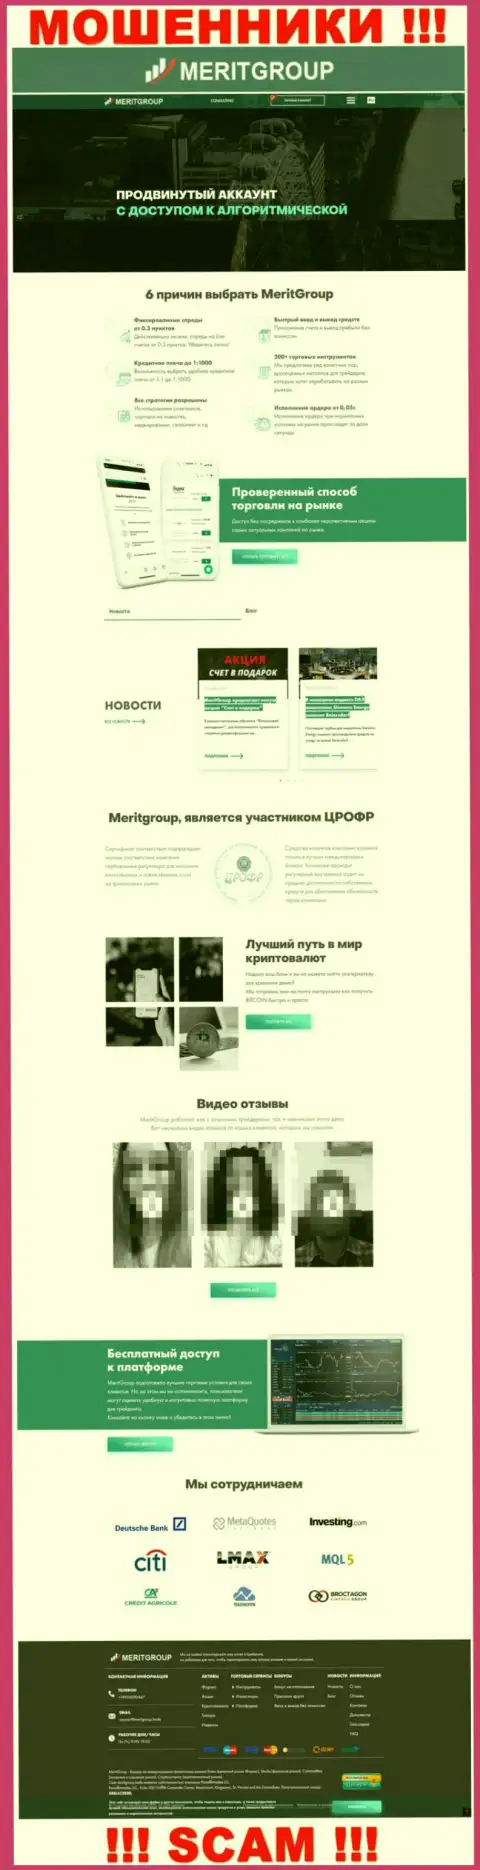 MeritGroup Trade - это официальный веб-портал мошенников Мерит Групп